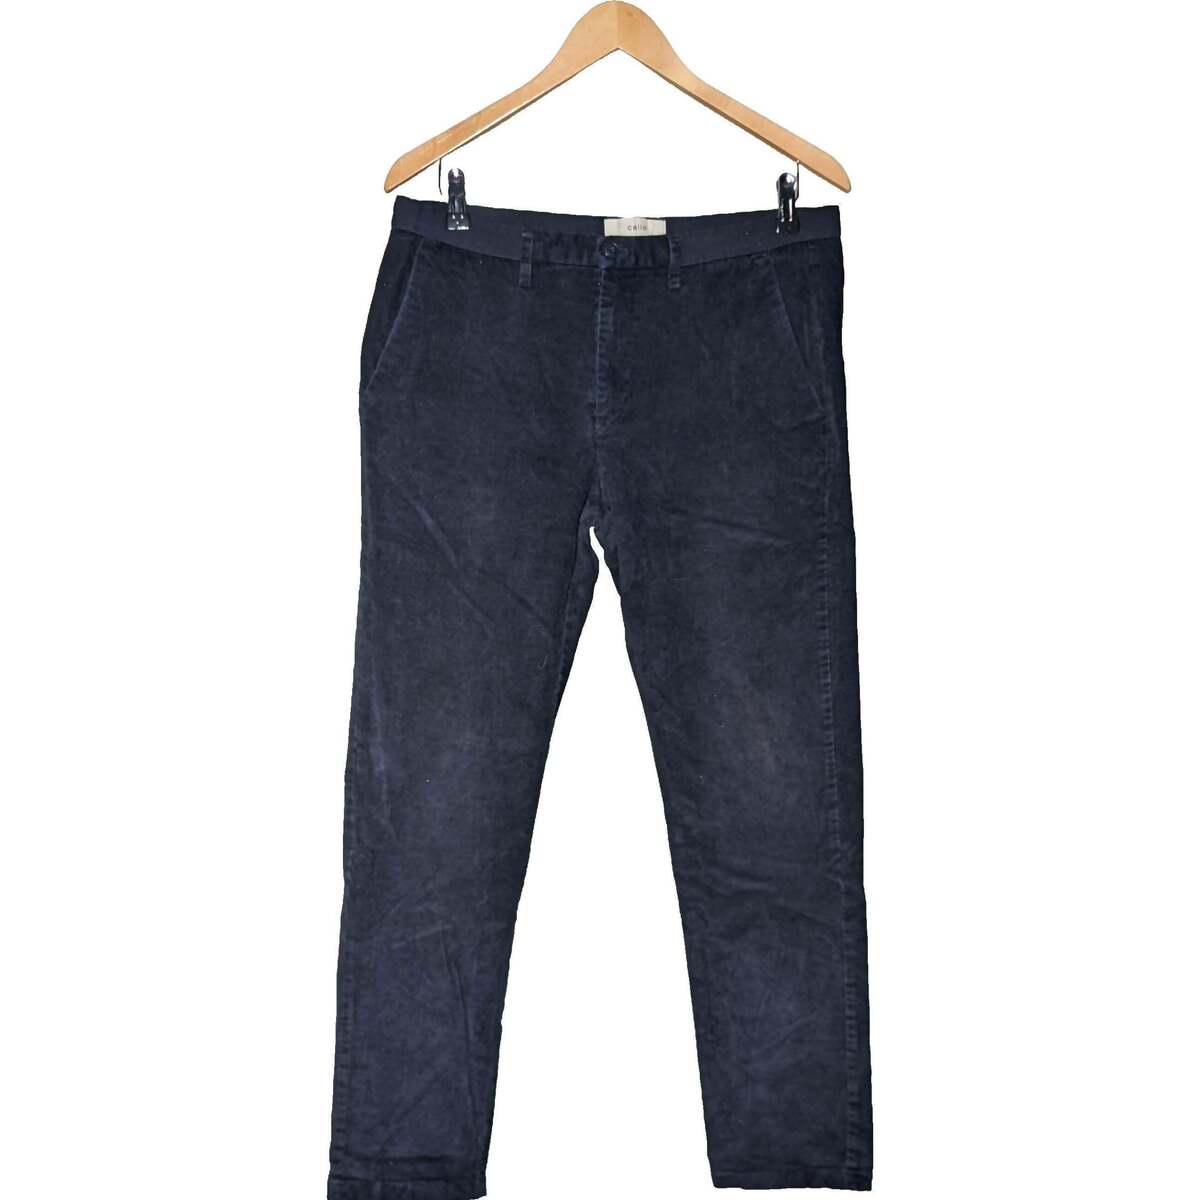 Vêtements Homme Pantalons Celio 44 - T5 - Xl/XXL Bleu